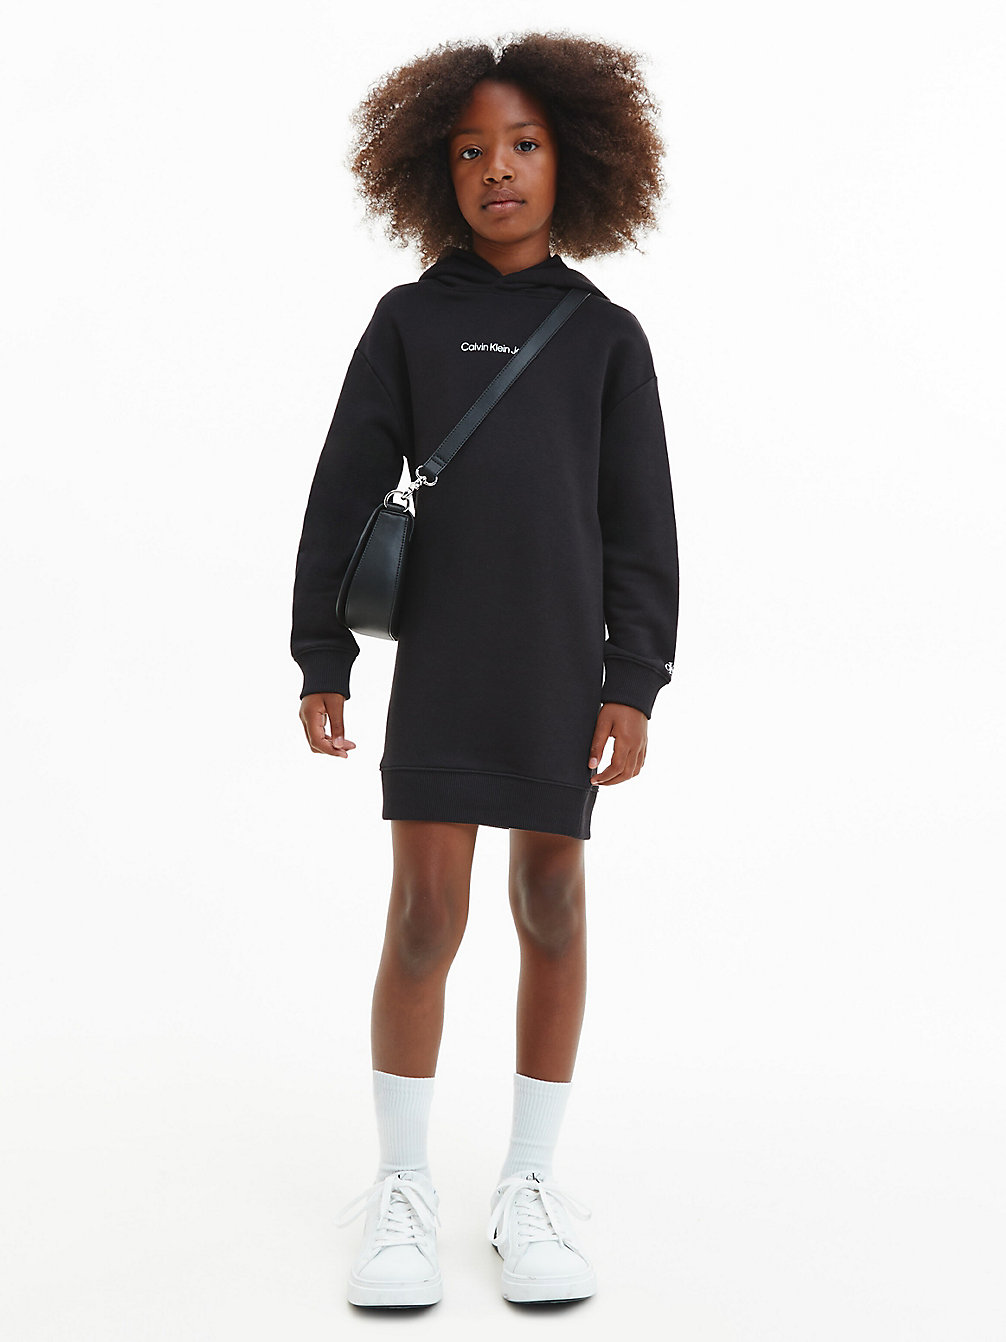 CK BLACK Hoodie Dress undefined girls Calvin Klein